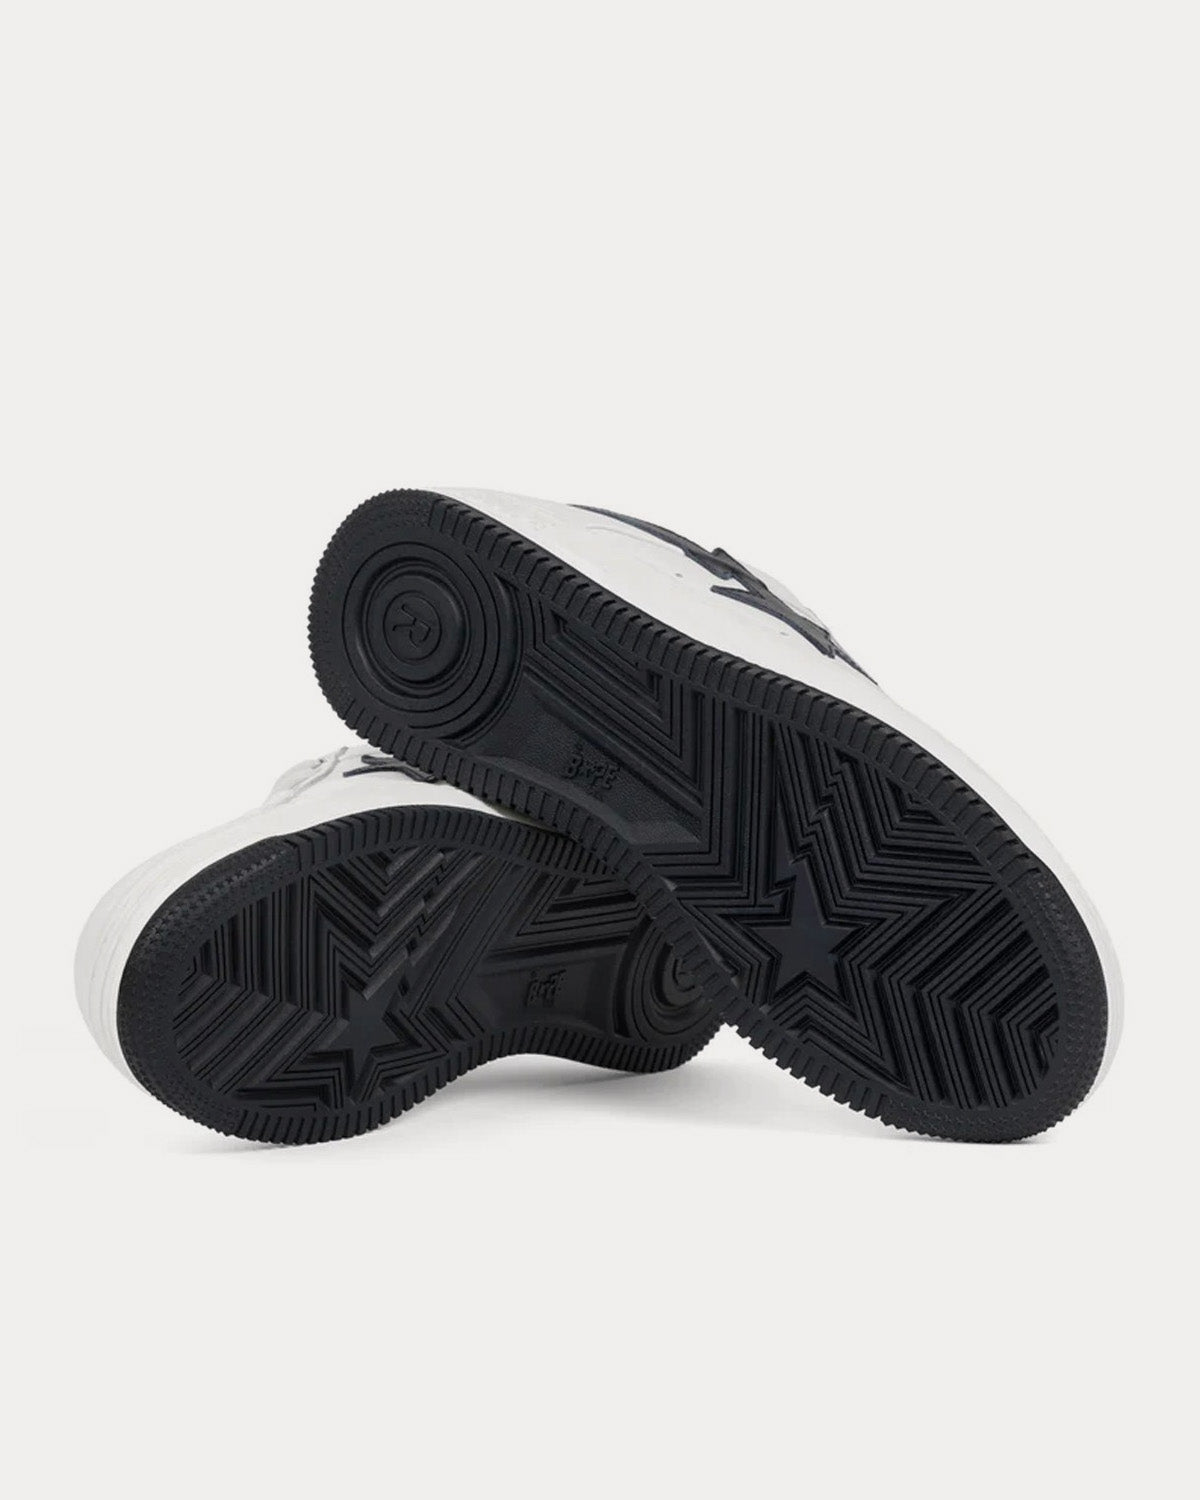 A Bathing APE x JJJJound Bape Sta White / Black Low Top Sneakers ...